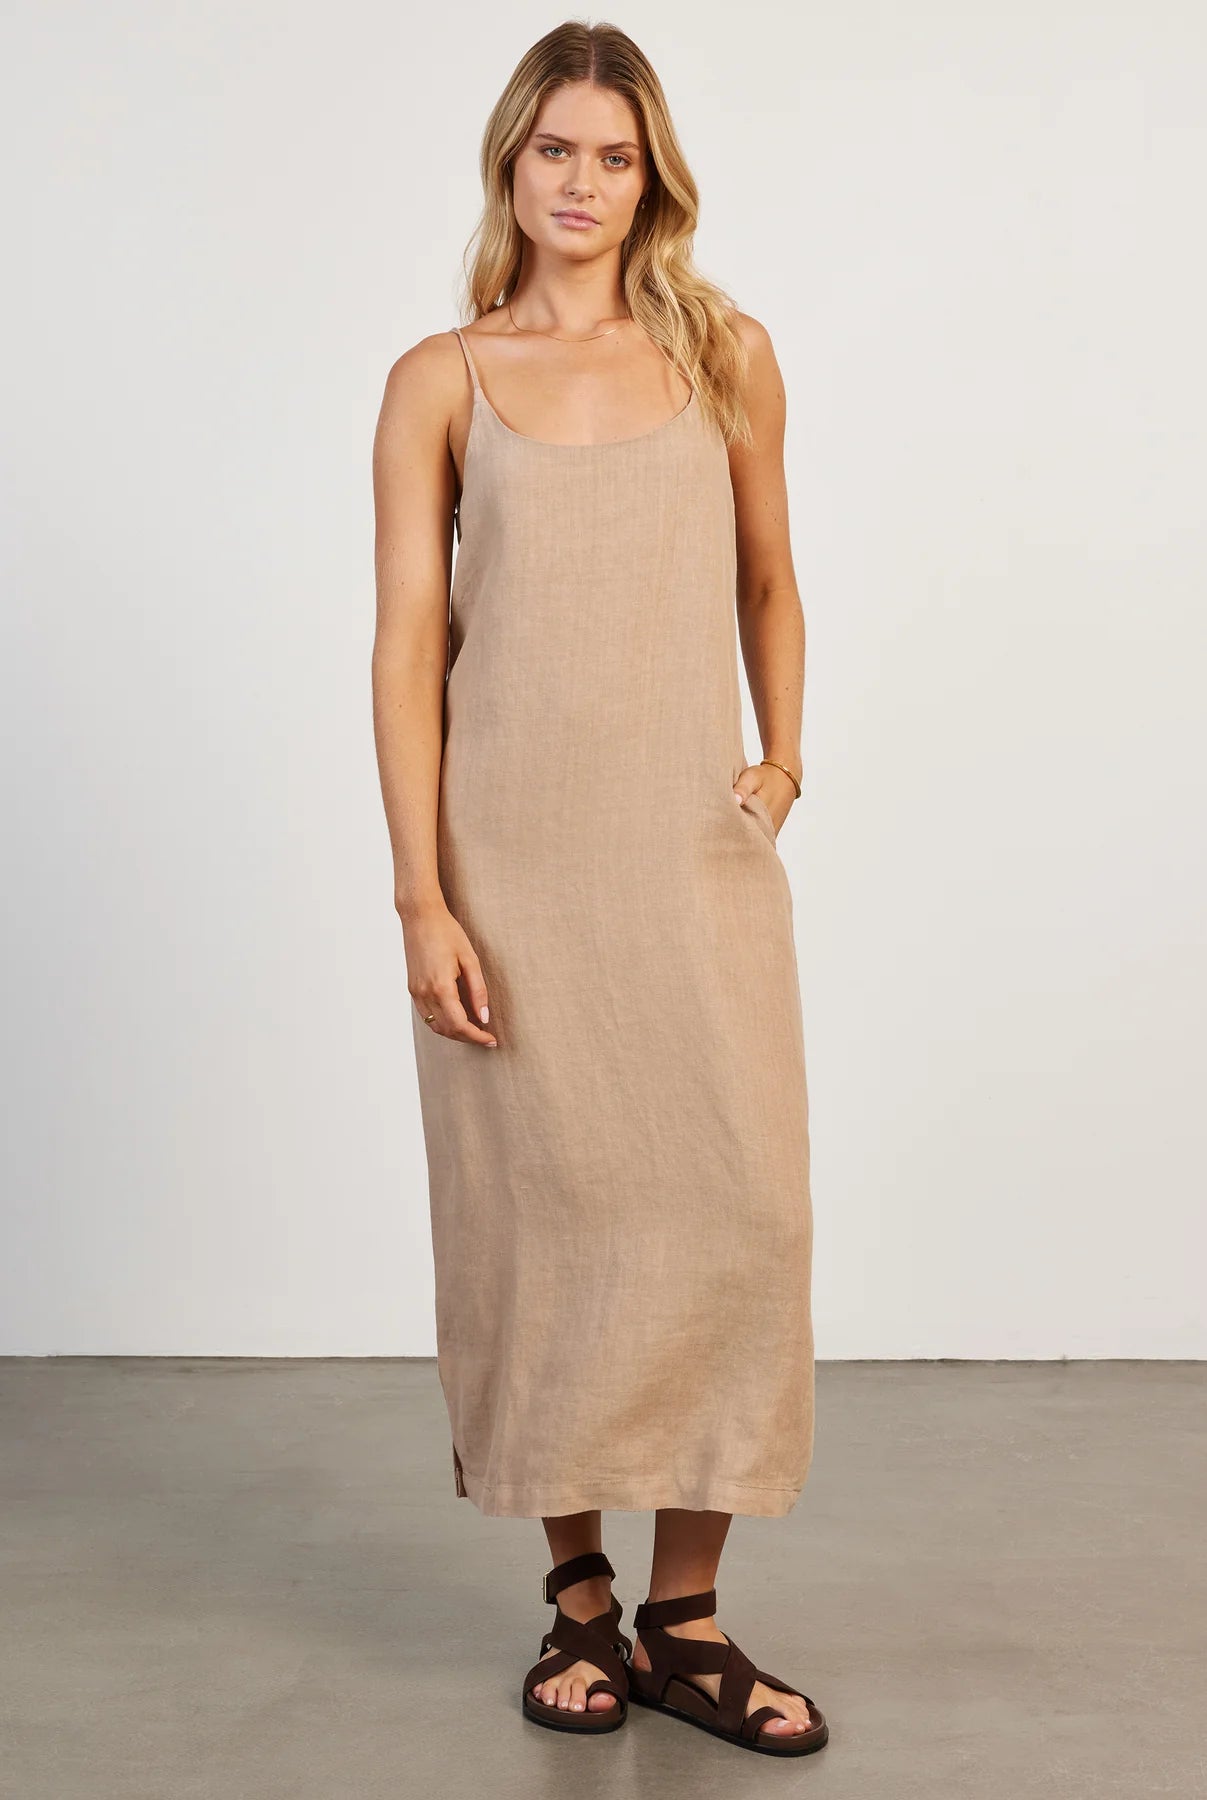 Essential Linen Slip Dress in Warm Sand